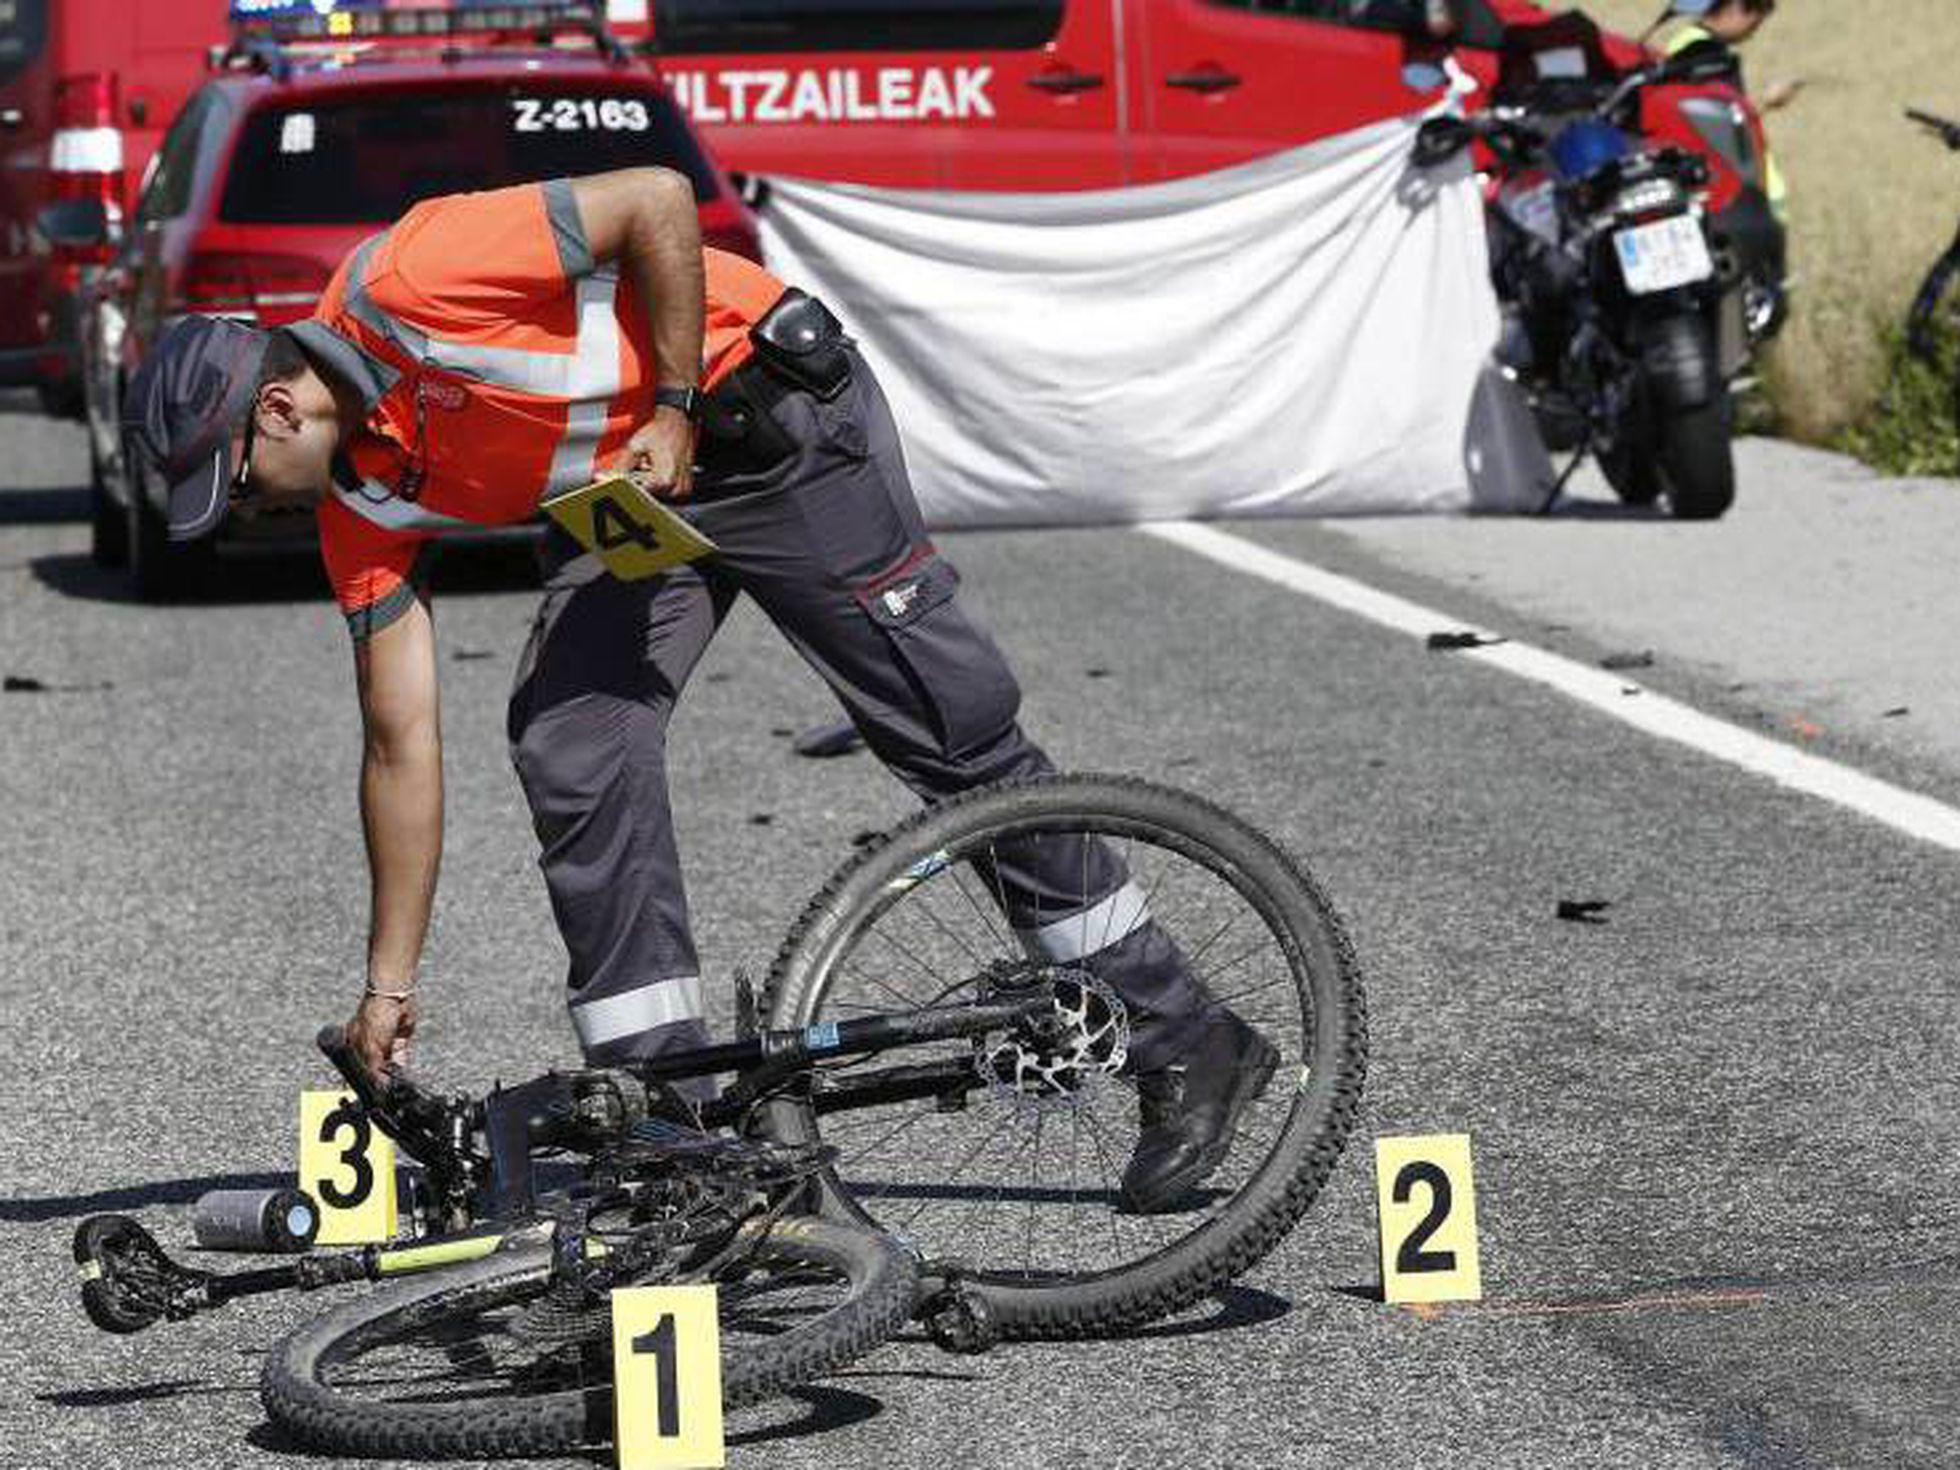 200 ciclistas muertos en España en los últimos 4 años